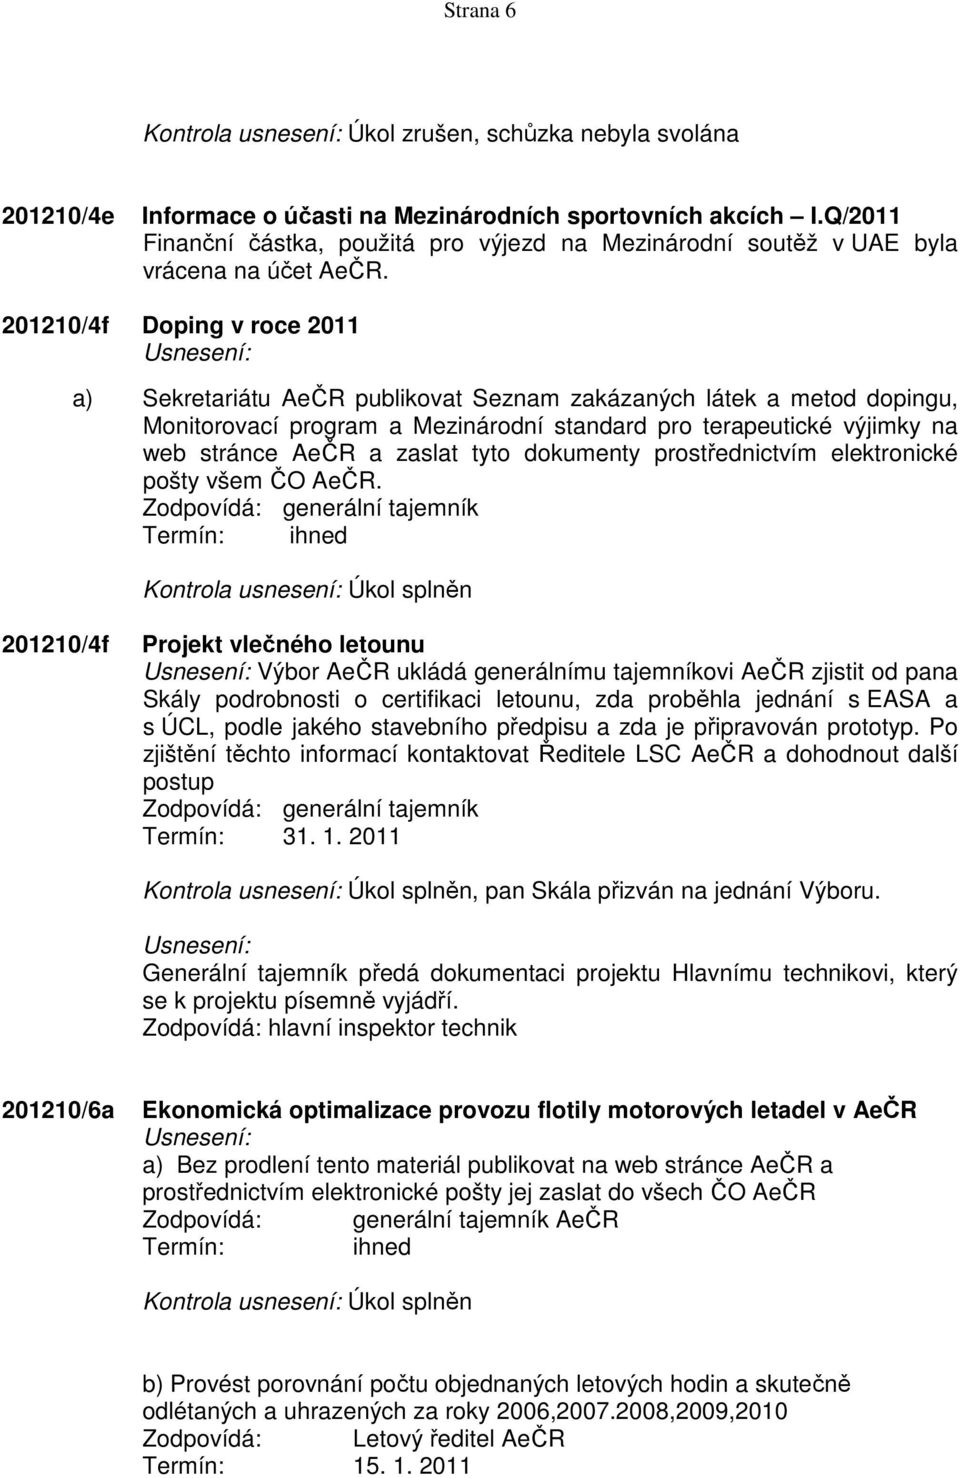 201210/4f Doping v roce 2011 a) Sekretariátu AeČR publikovat Seznam zakázaných látek a metod dopingu, Monitorovací program a Mezinárodní standard pro terapeutické výjimky na web stránce AeČR a zaslat